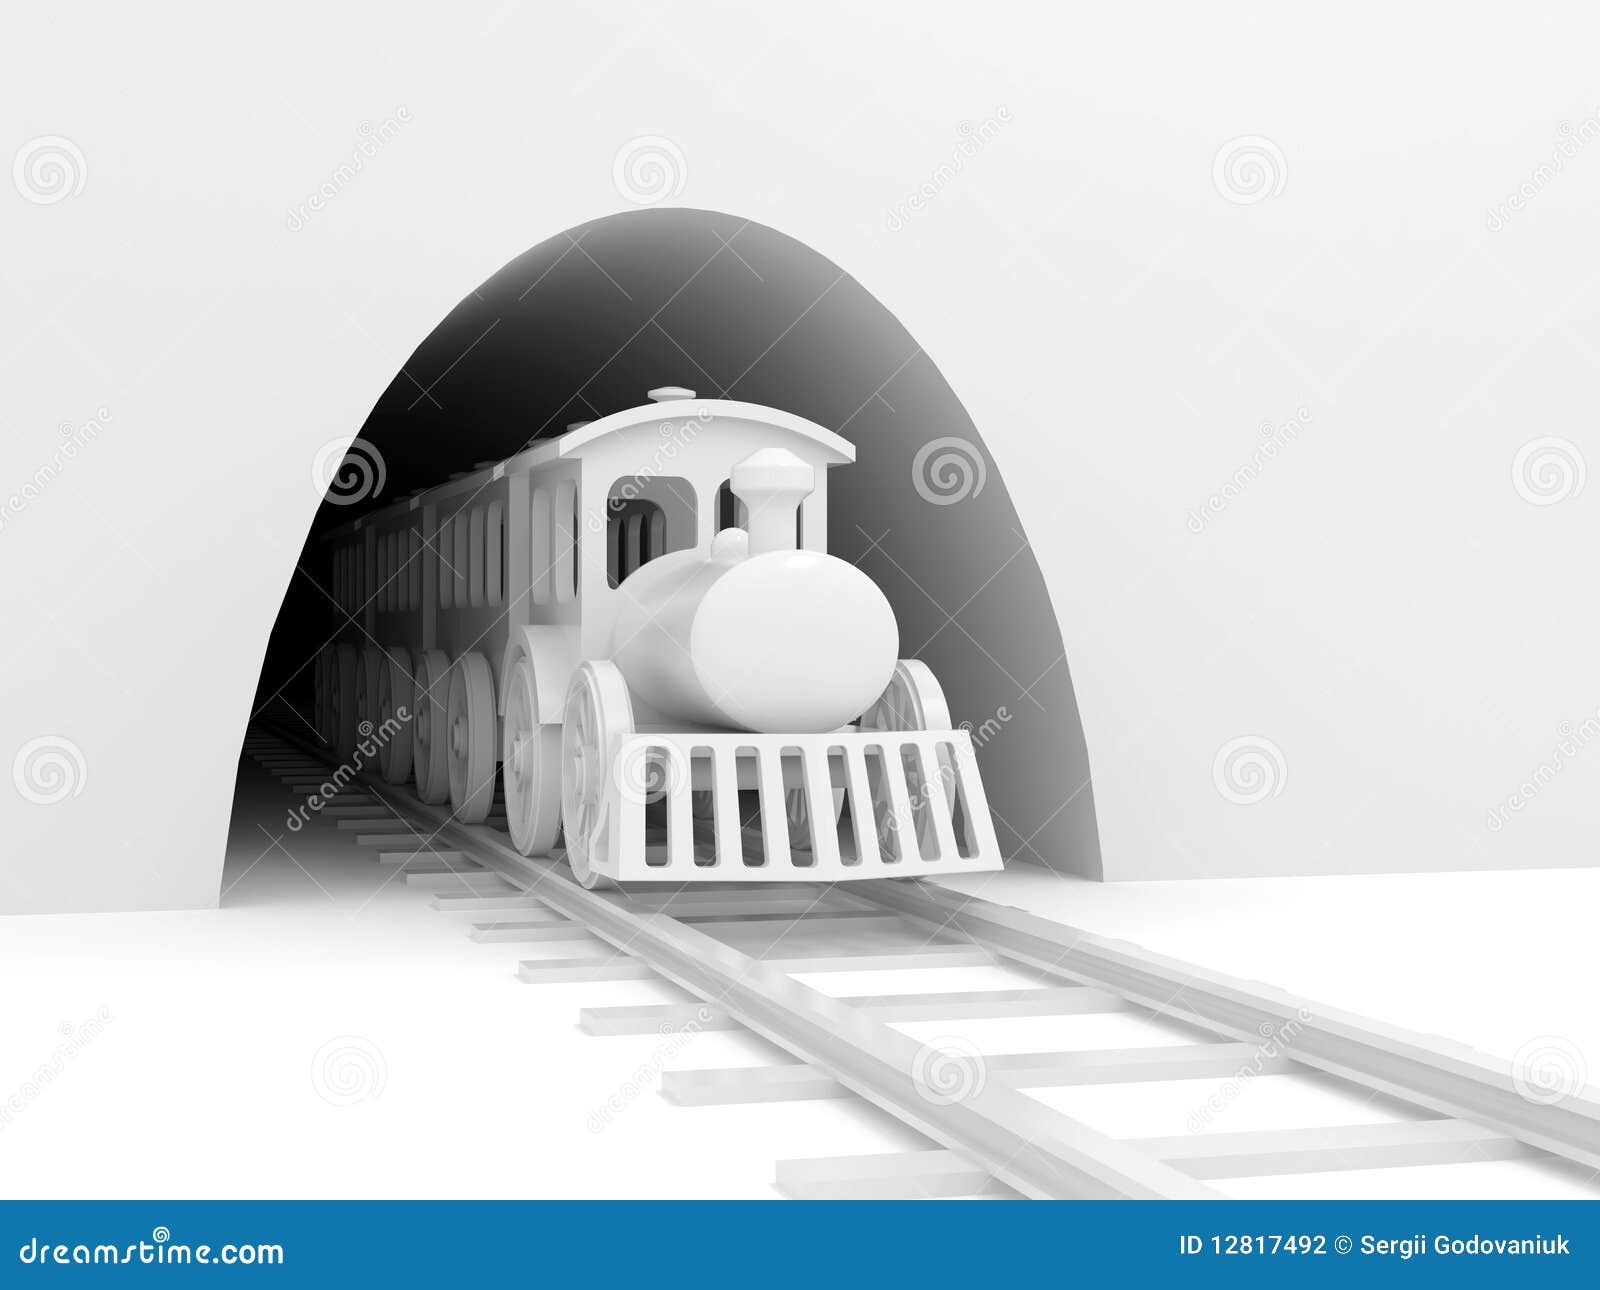 train tunnel clipart - photo #13